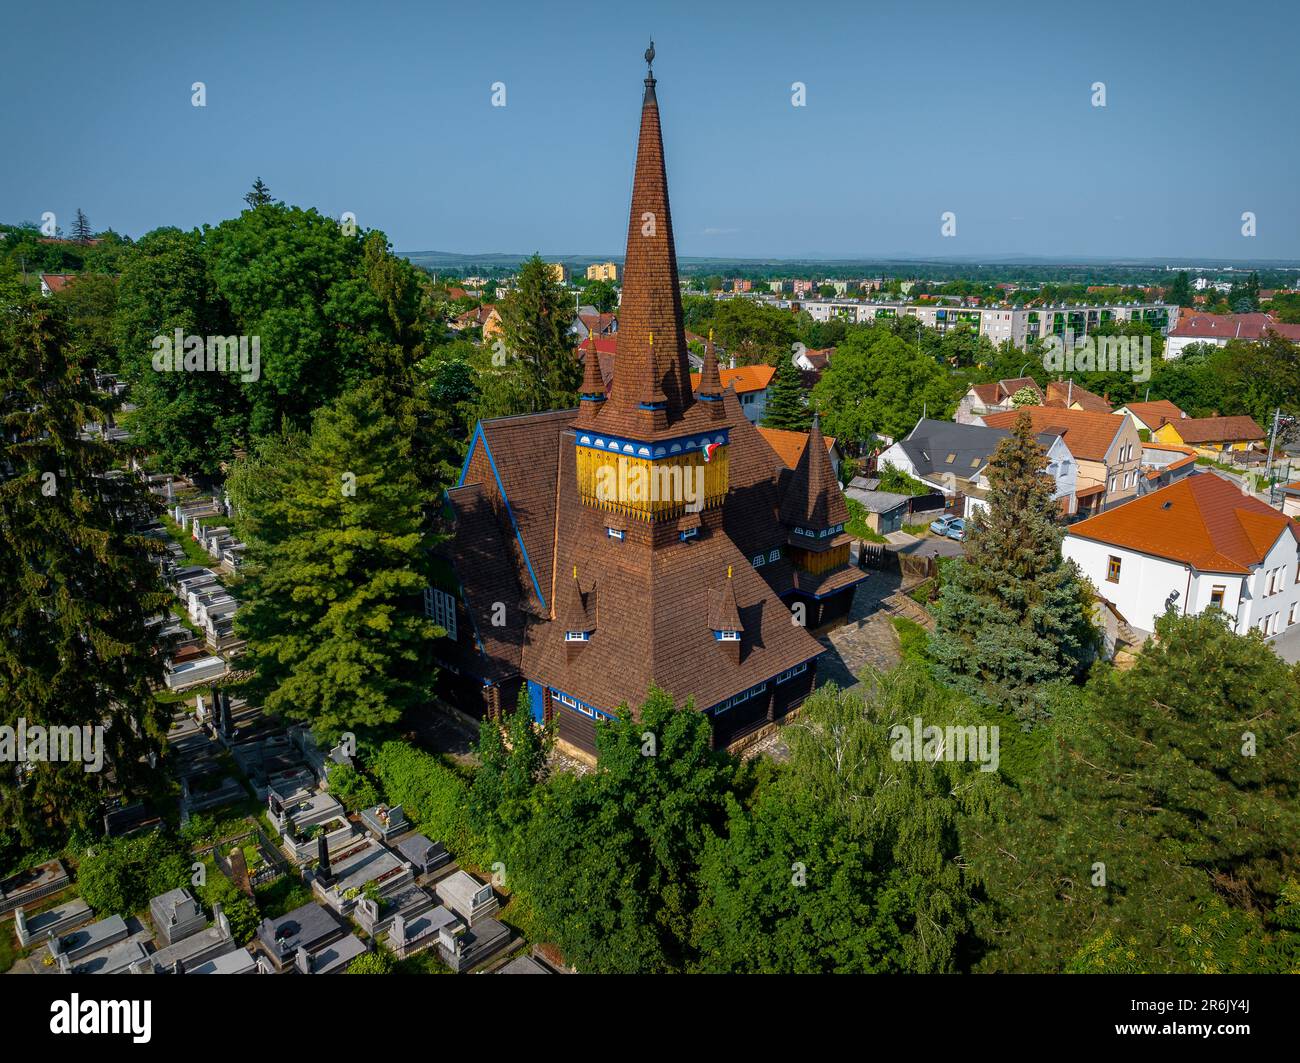 La chiesa in legno della città di Miskolc è un luogo di culto unico. Il tempio costruito solo in legno. Incredibile edificio colorato con arte di scultura in legno Foto Stock